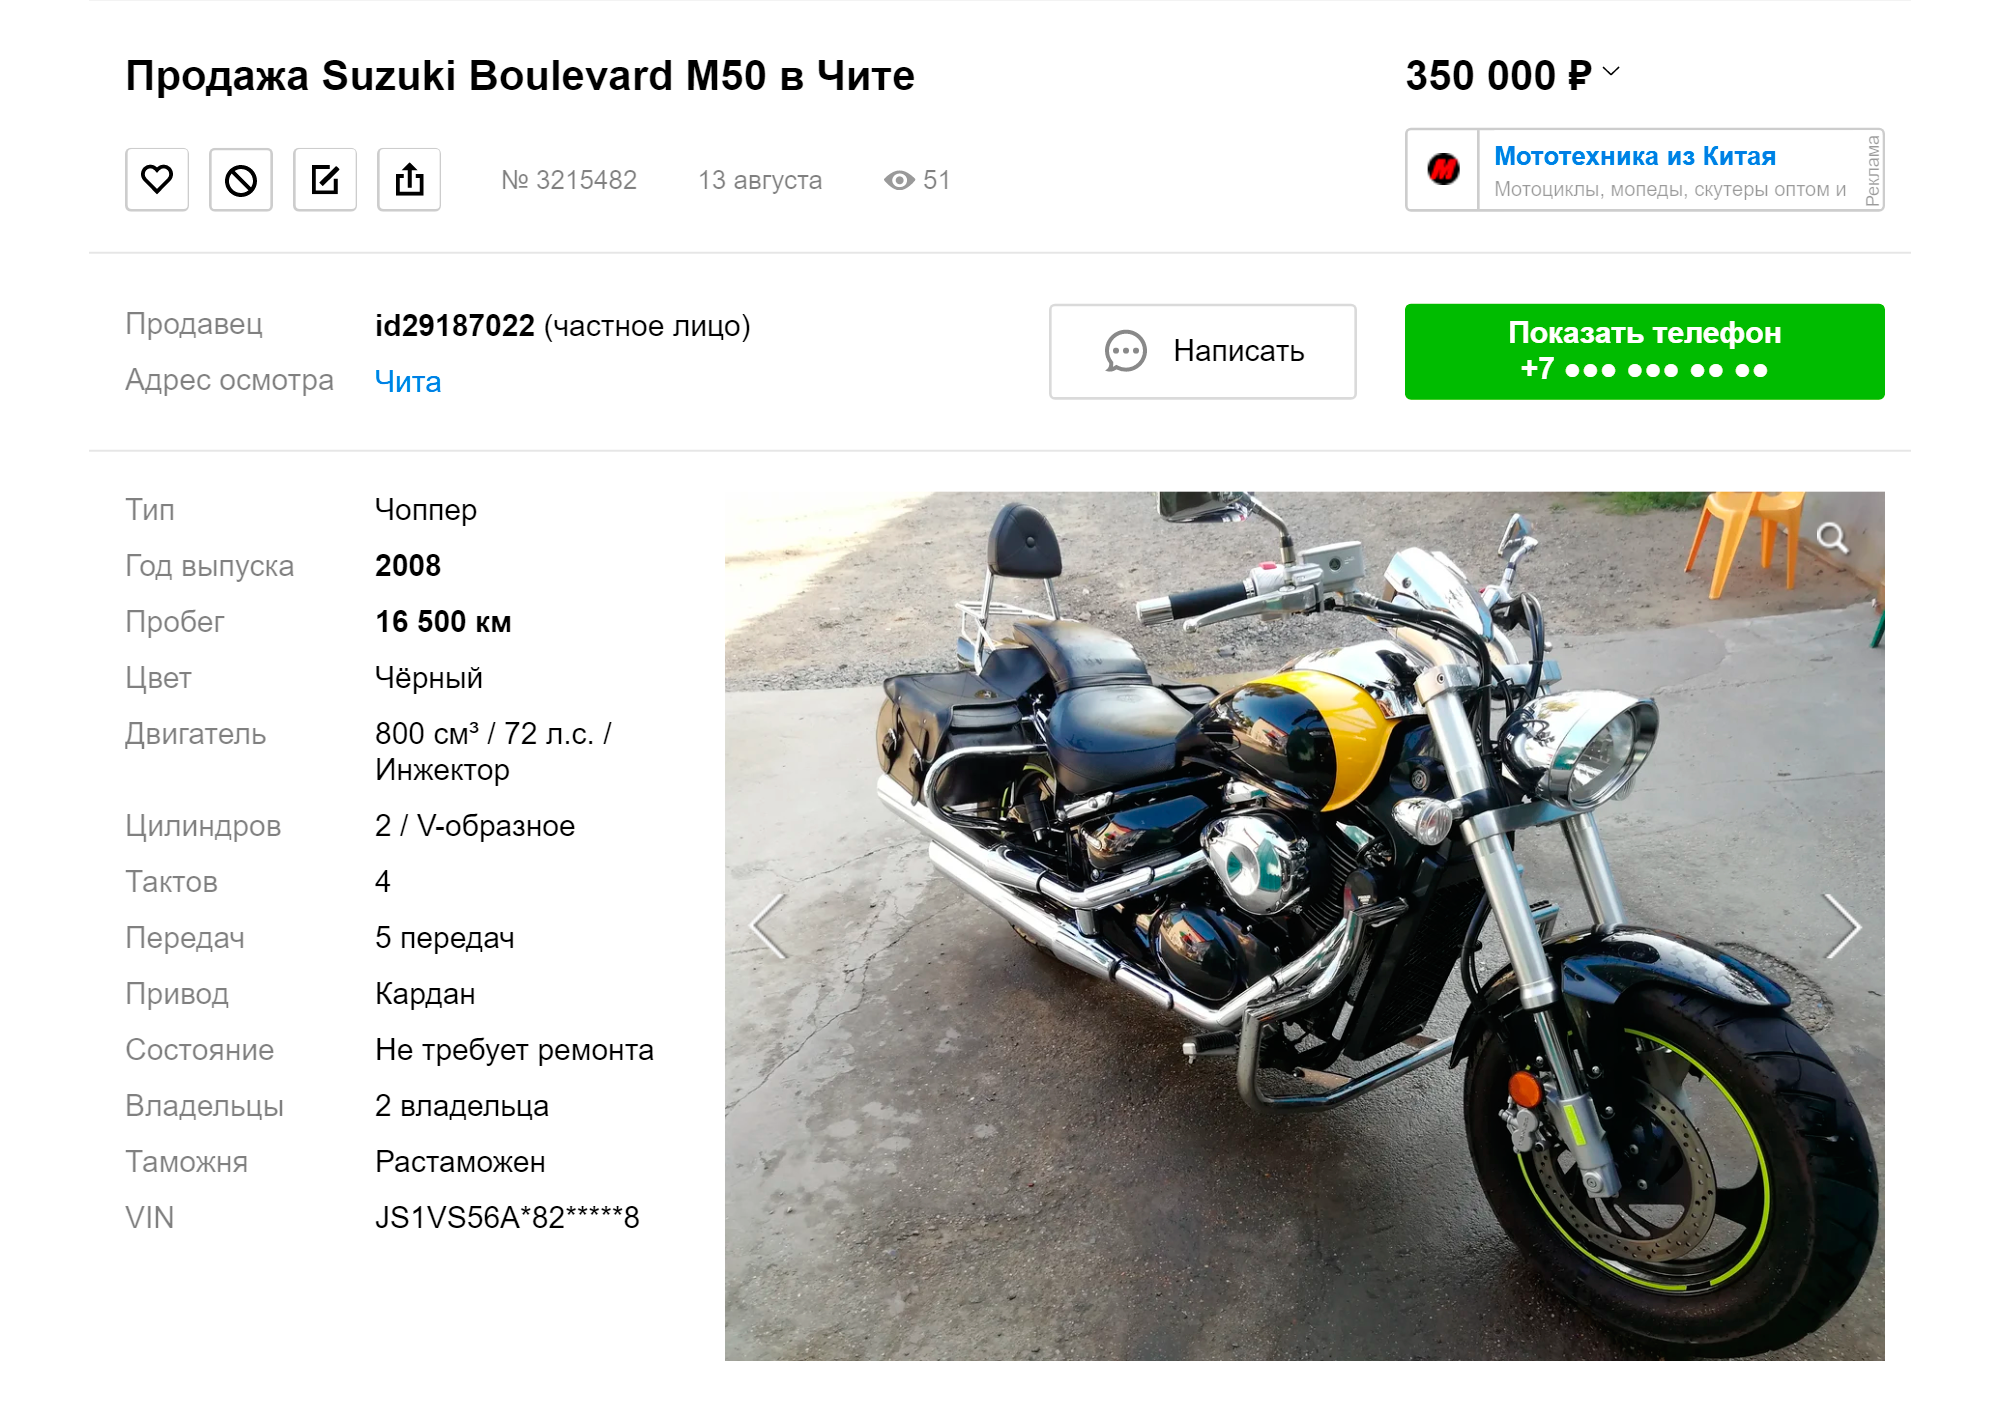 Такой же мотоцикл, как у меня, сейчас есть на «Авто⁠-⁠ру» за 350 000 рублей. Зимой, когда мотосезон закончится, этот мотоцикл можно будет купить на 30⁠—⁠40 тысяч дешевле